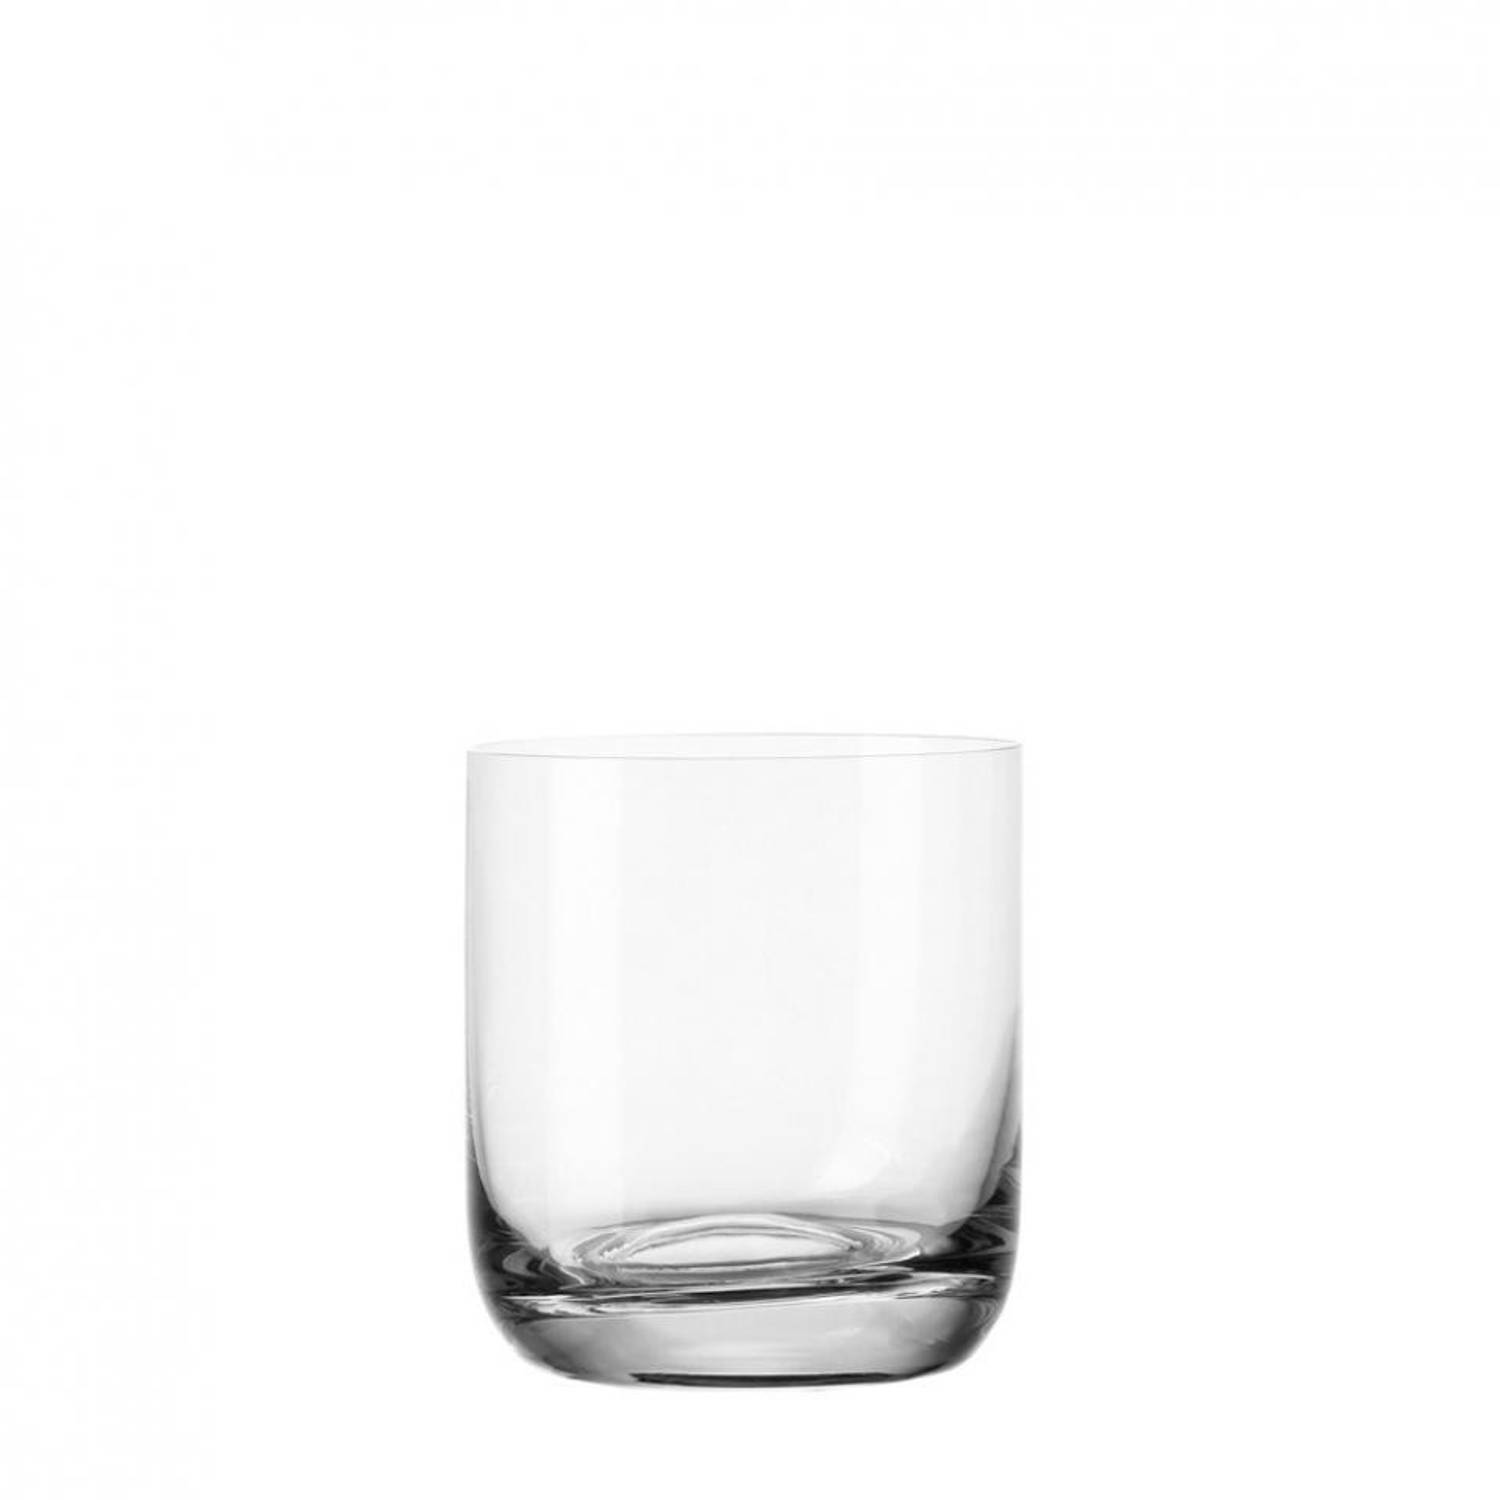 Leonardo Daily Whiskyglas 0,3 L 6 st.